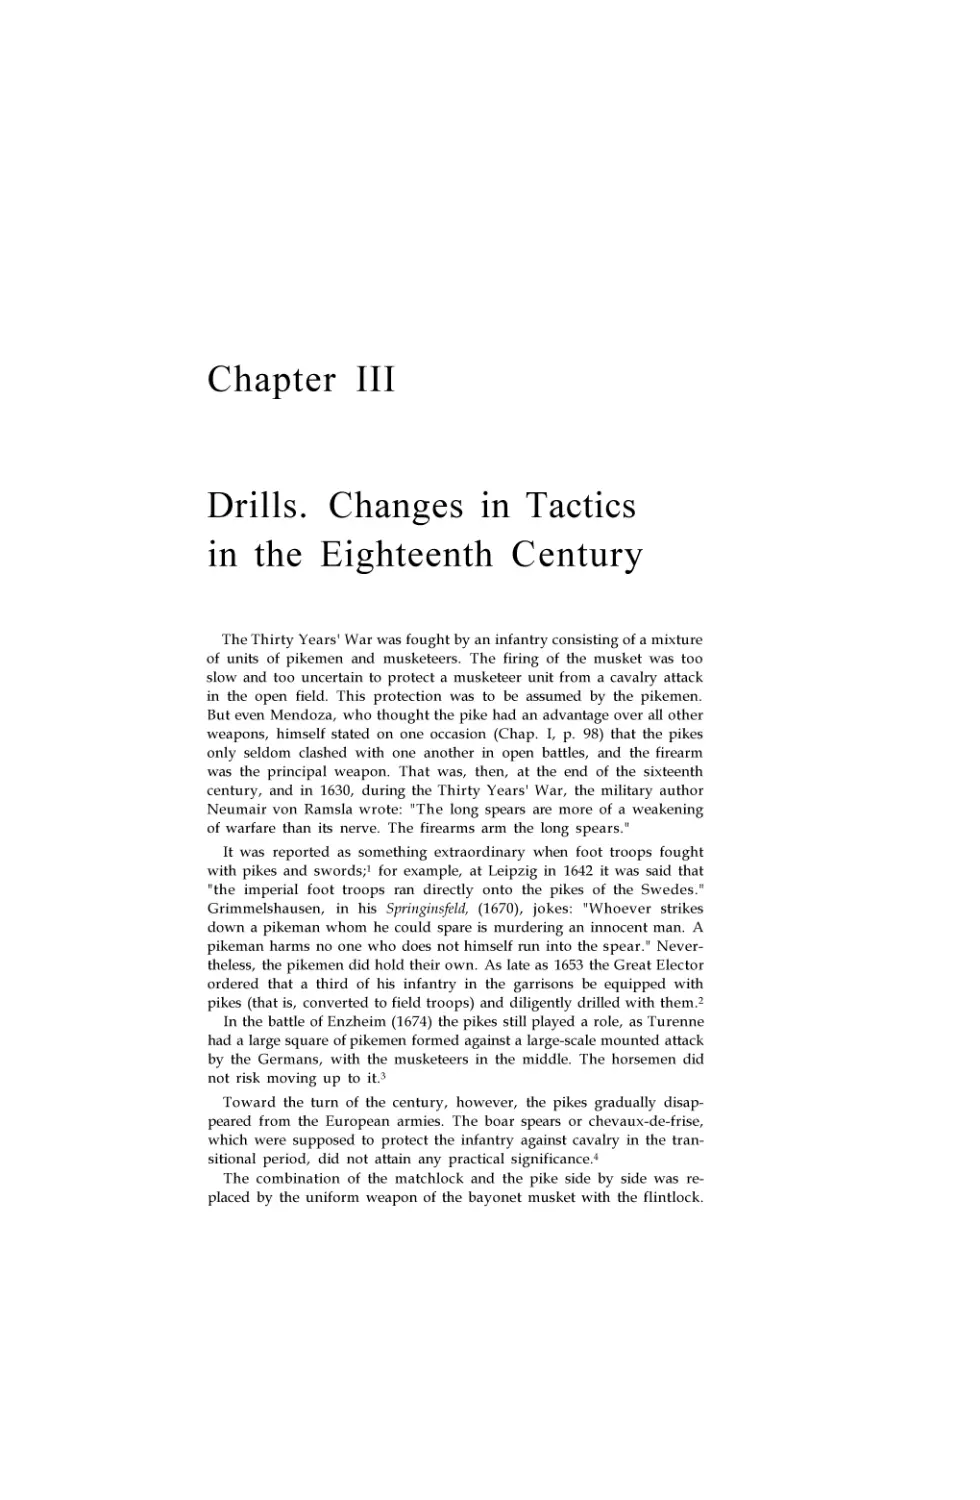 Drills. Changes in Tactics in the Eighteenth Century